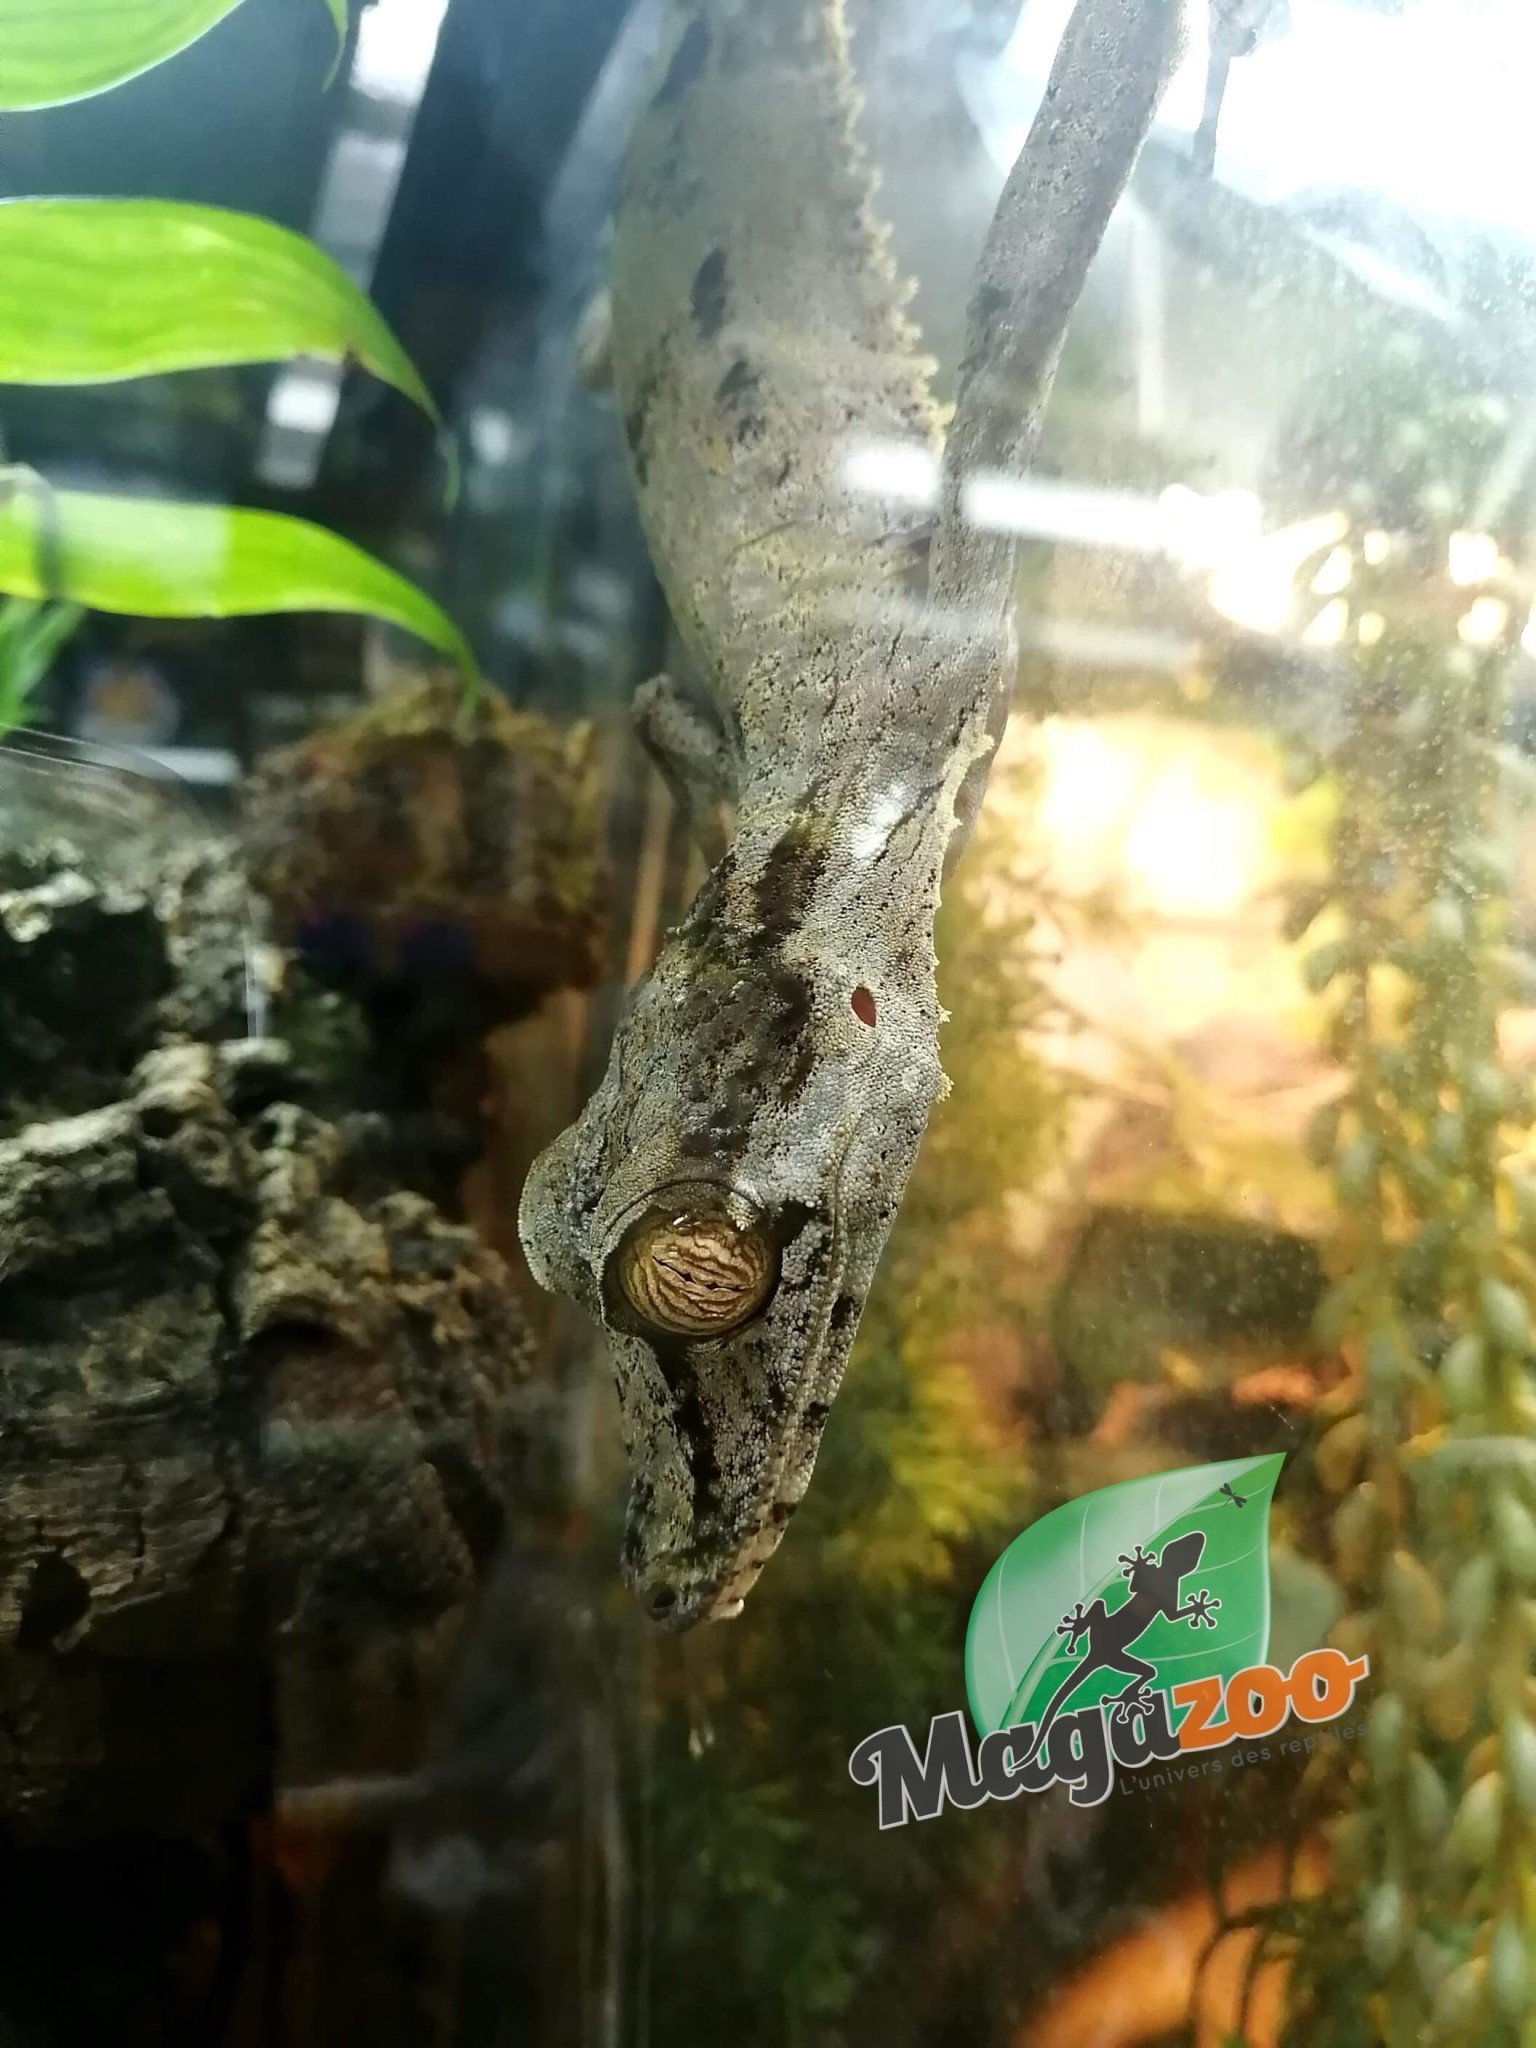 Magazoo Gecko à queue de feuille Mâle/Uroplatus fimbriatus